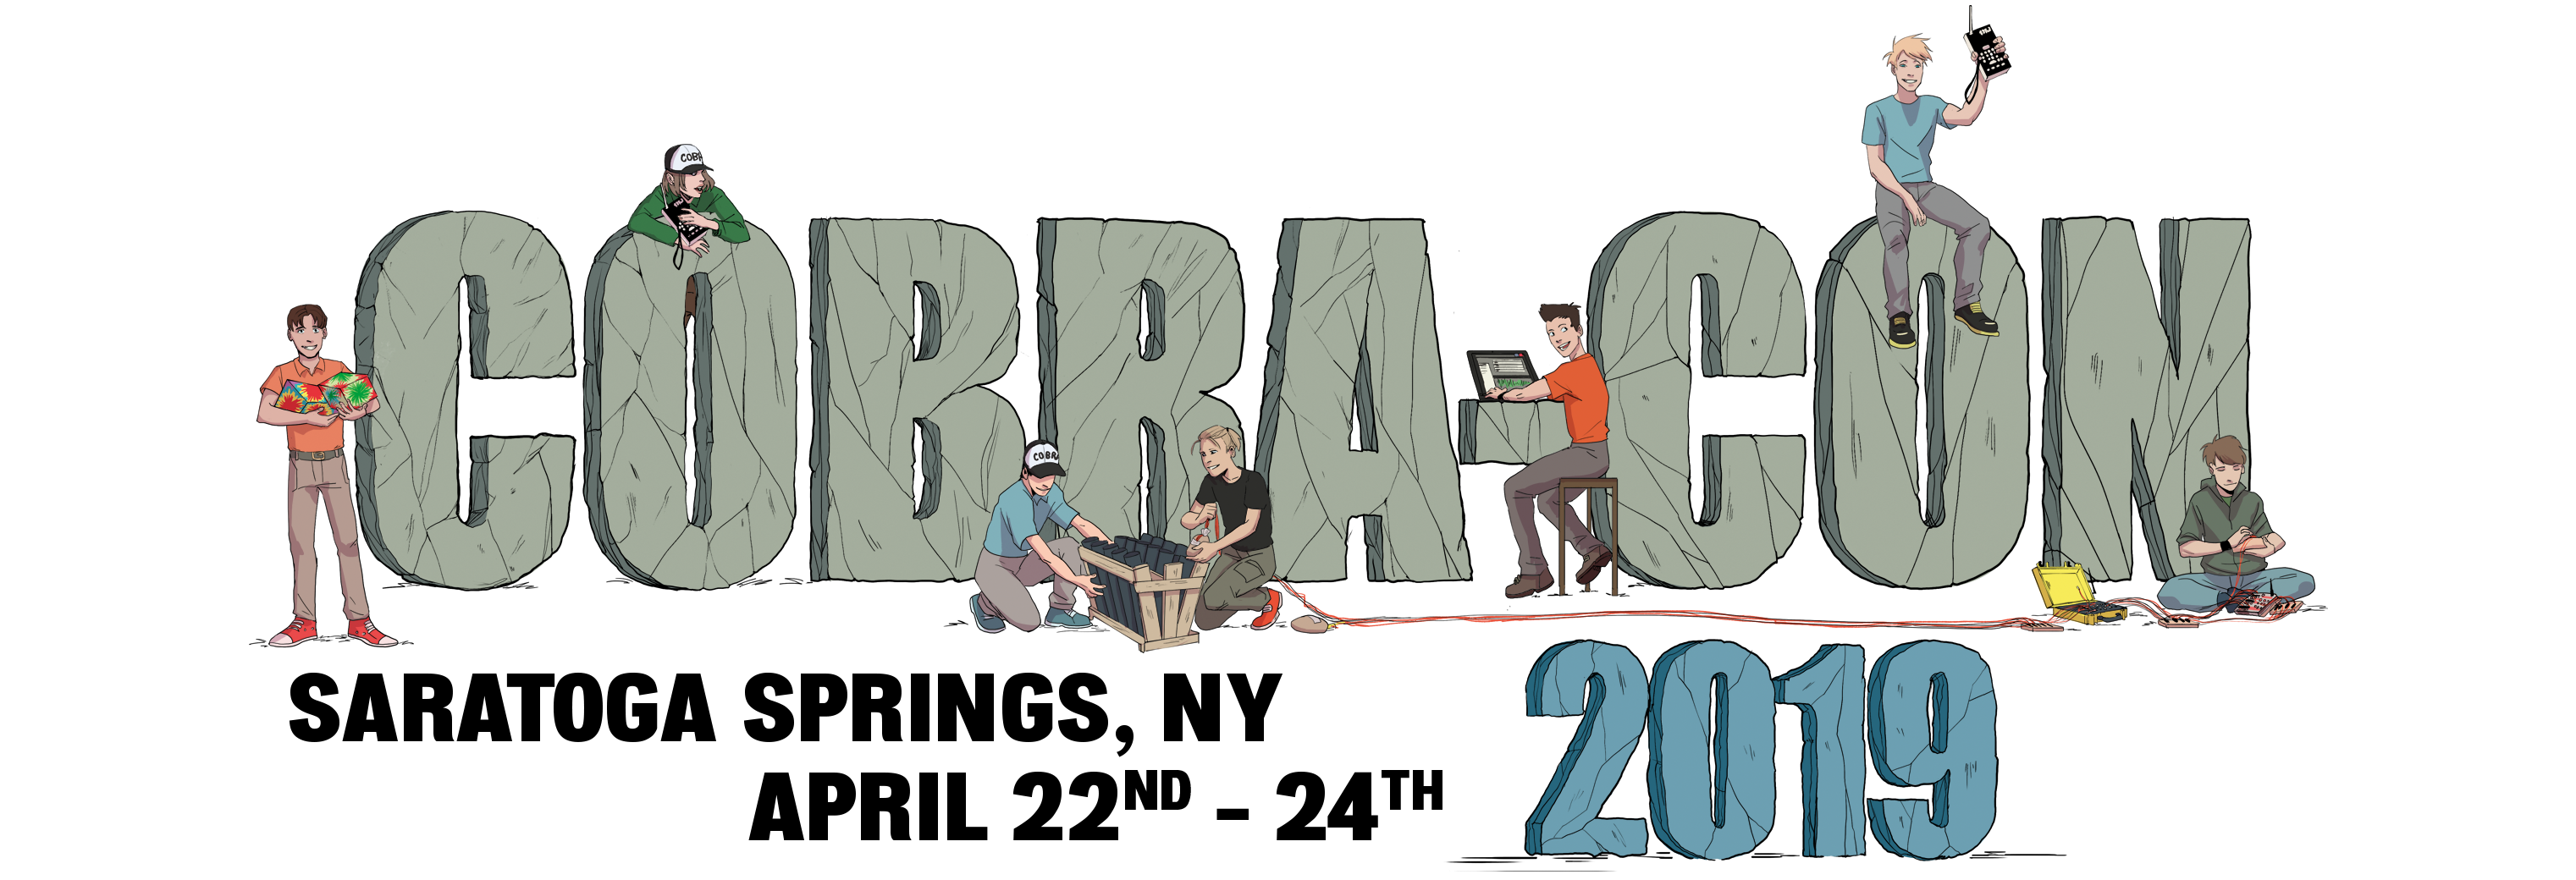 Cobra-Con 2019 logo Saratoga Springs April 22-24